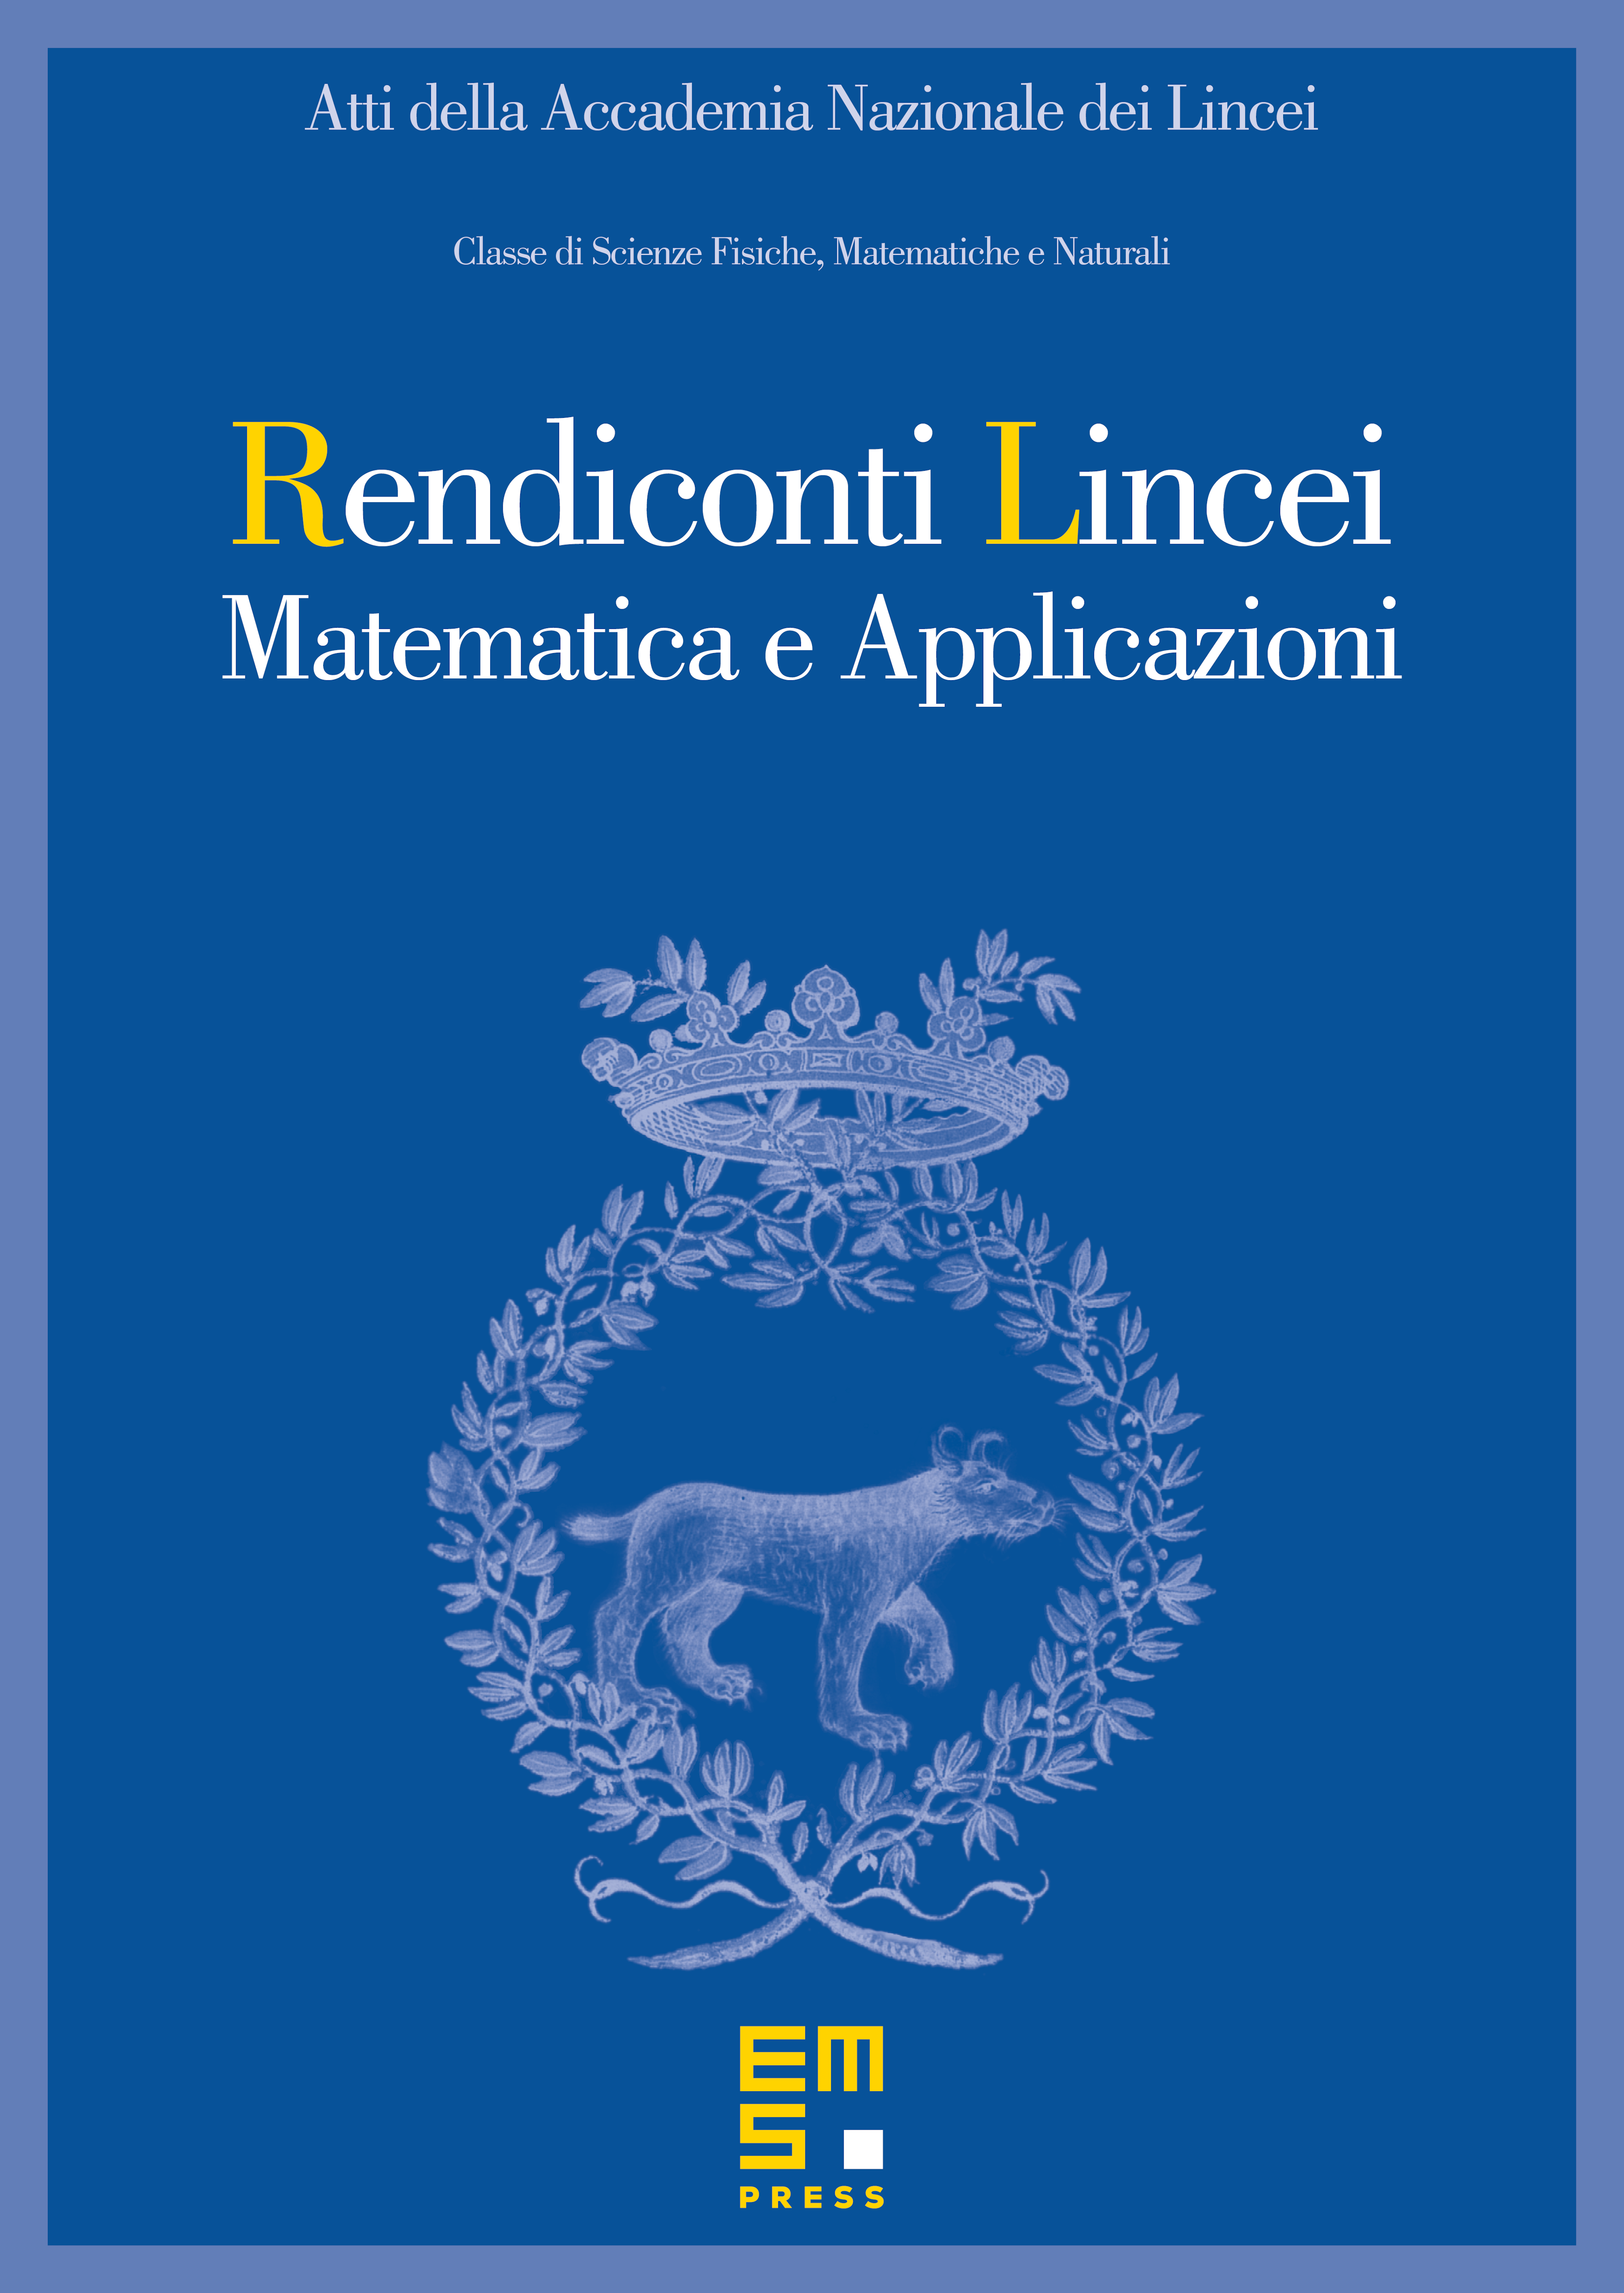 Rendiconti Lincei cover